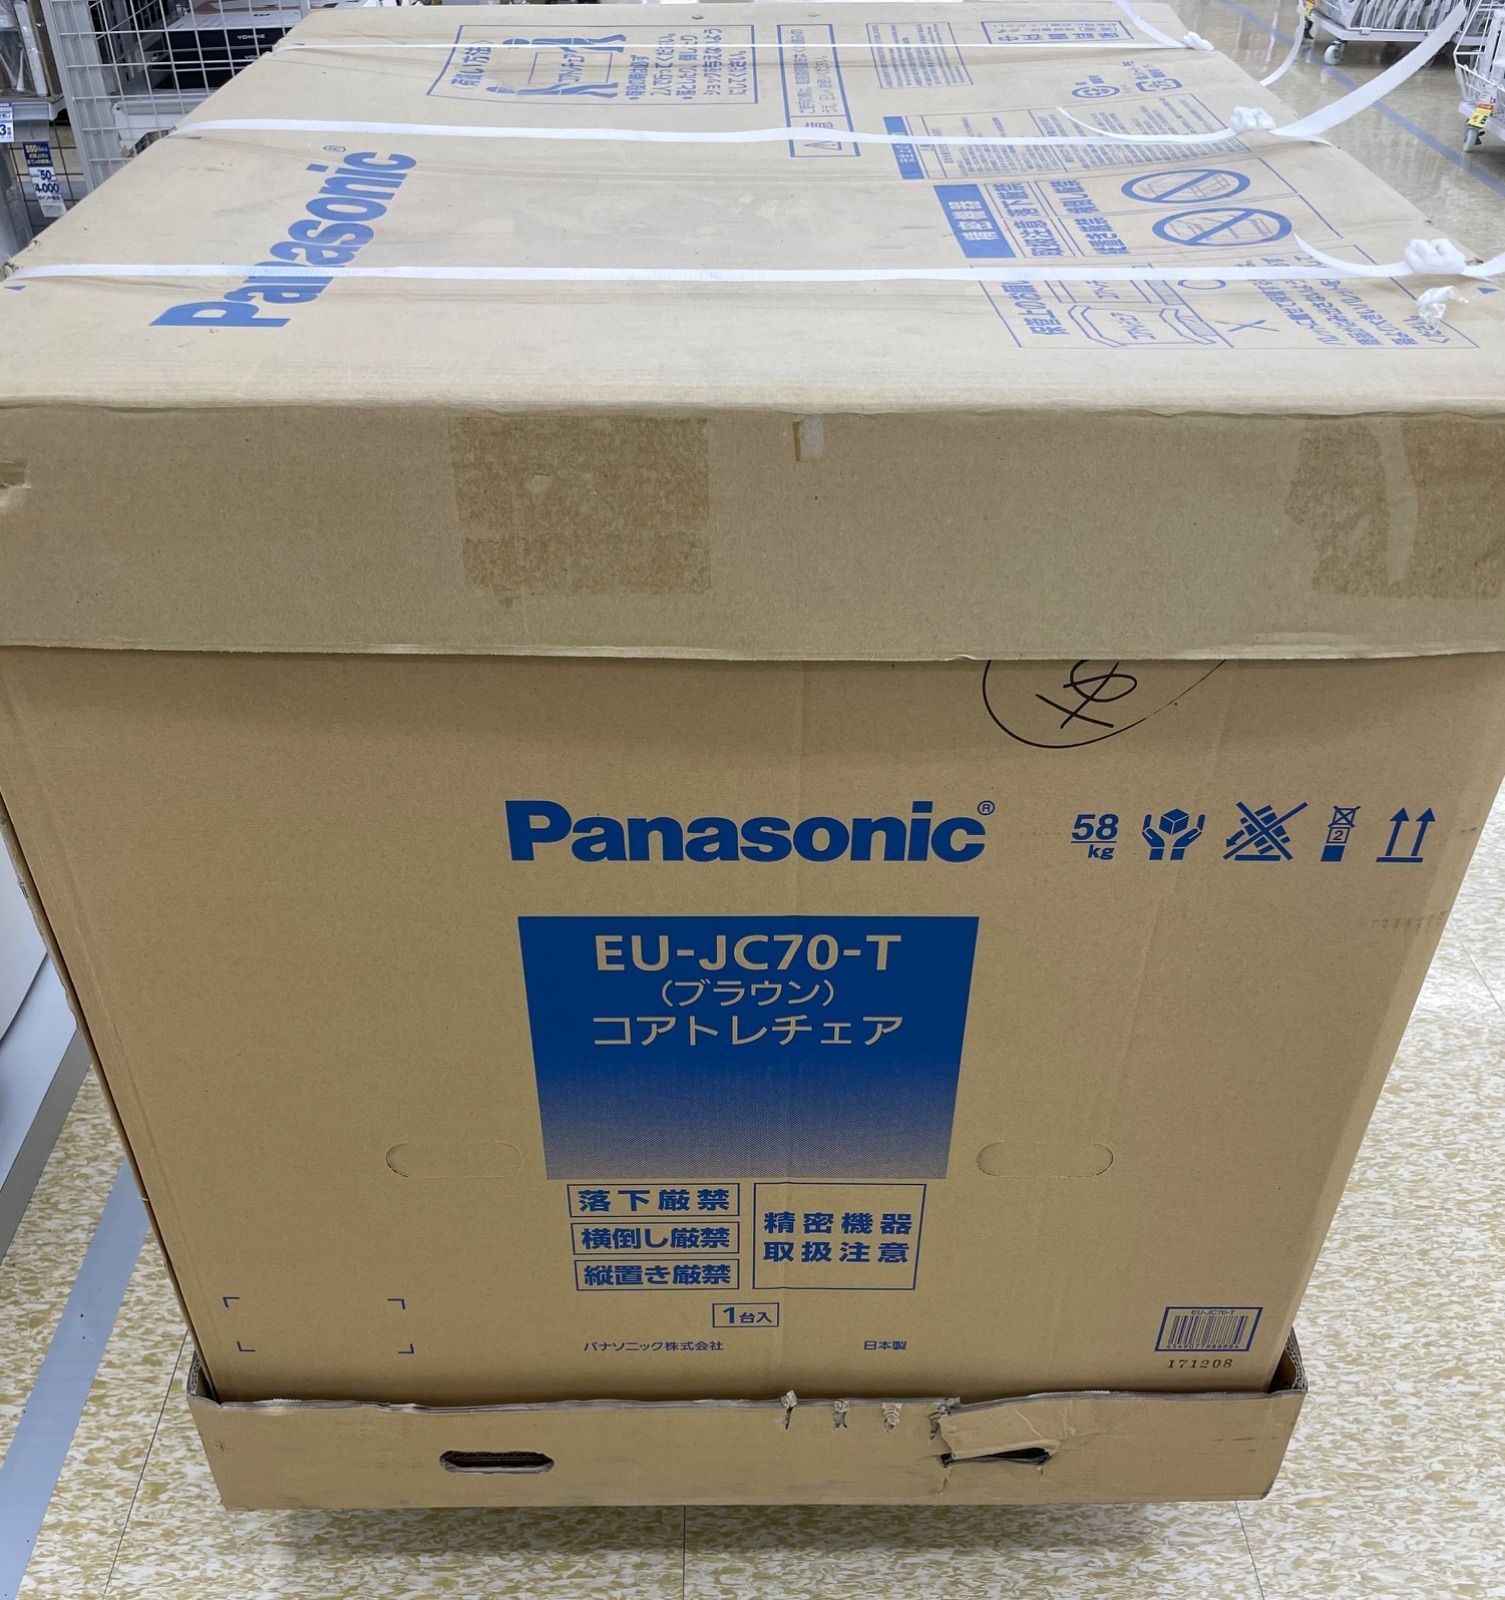 Panasonic コアトレチェア EU-JC70-T ブラウン色 summum-agency.com